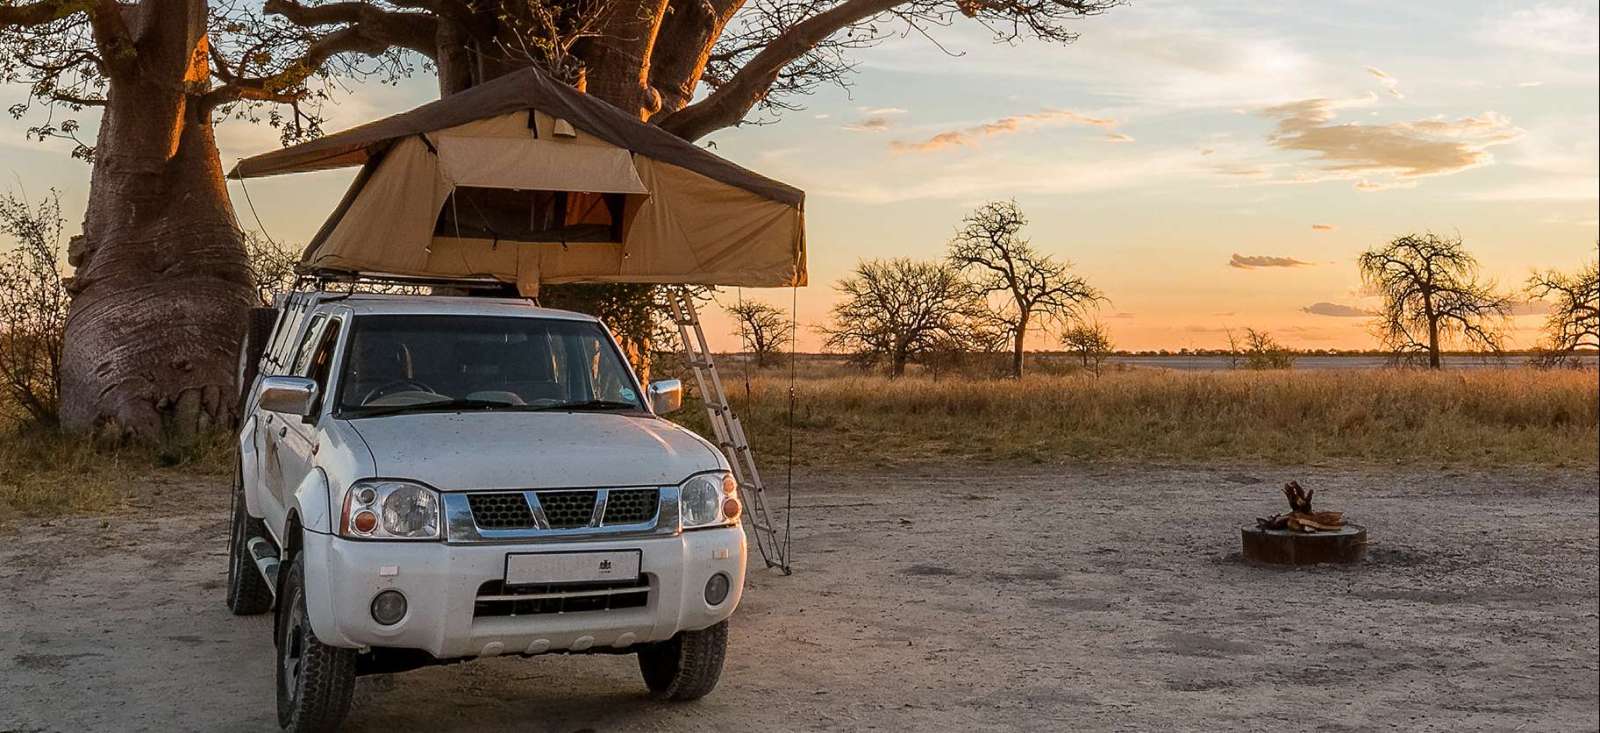 Voyage roadtrip - Autotour en Afrique Australe